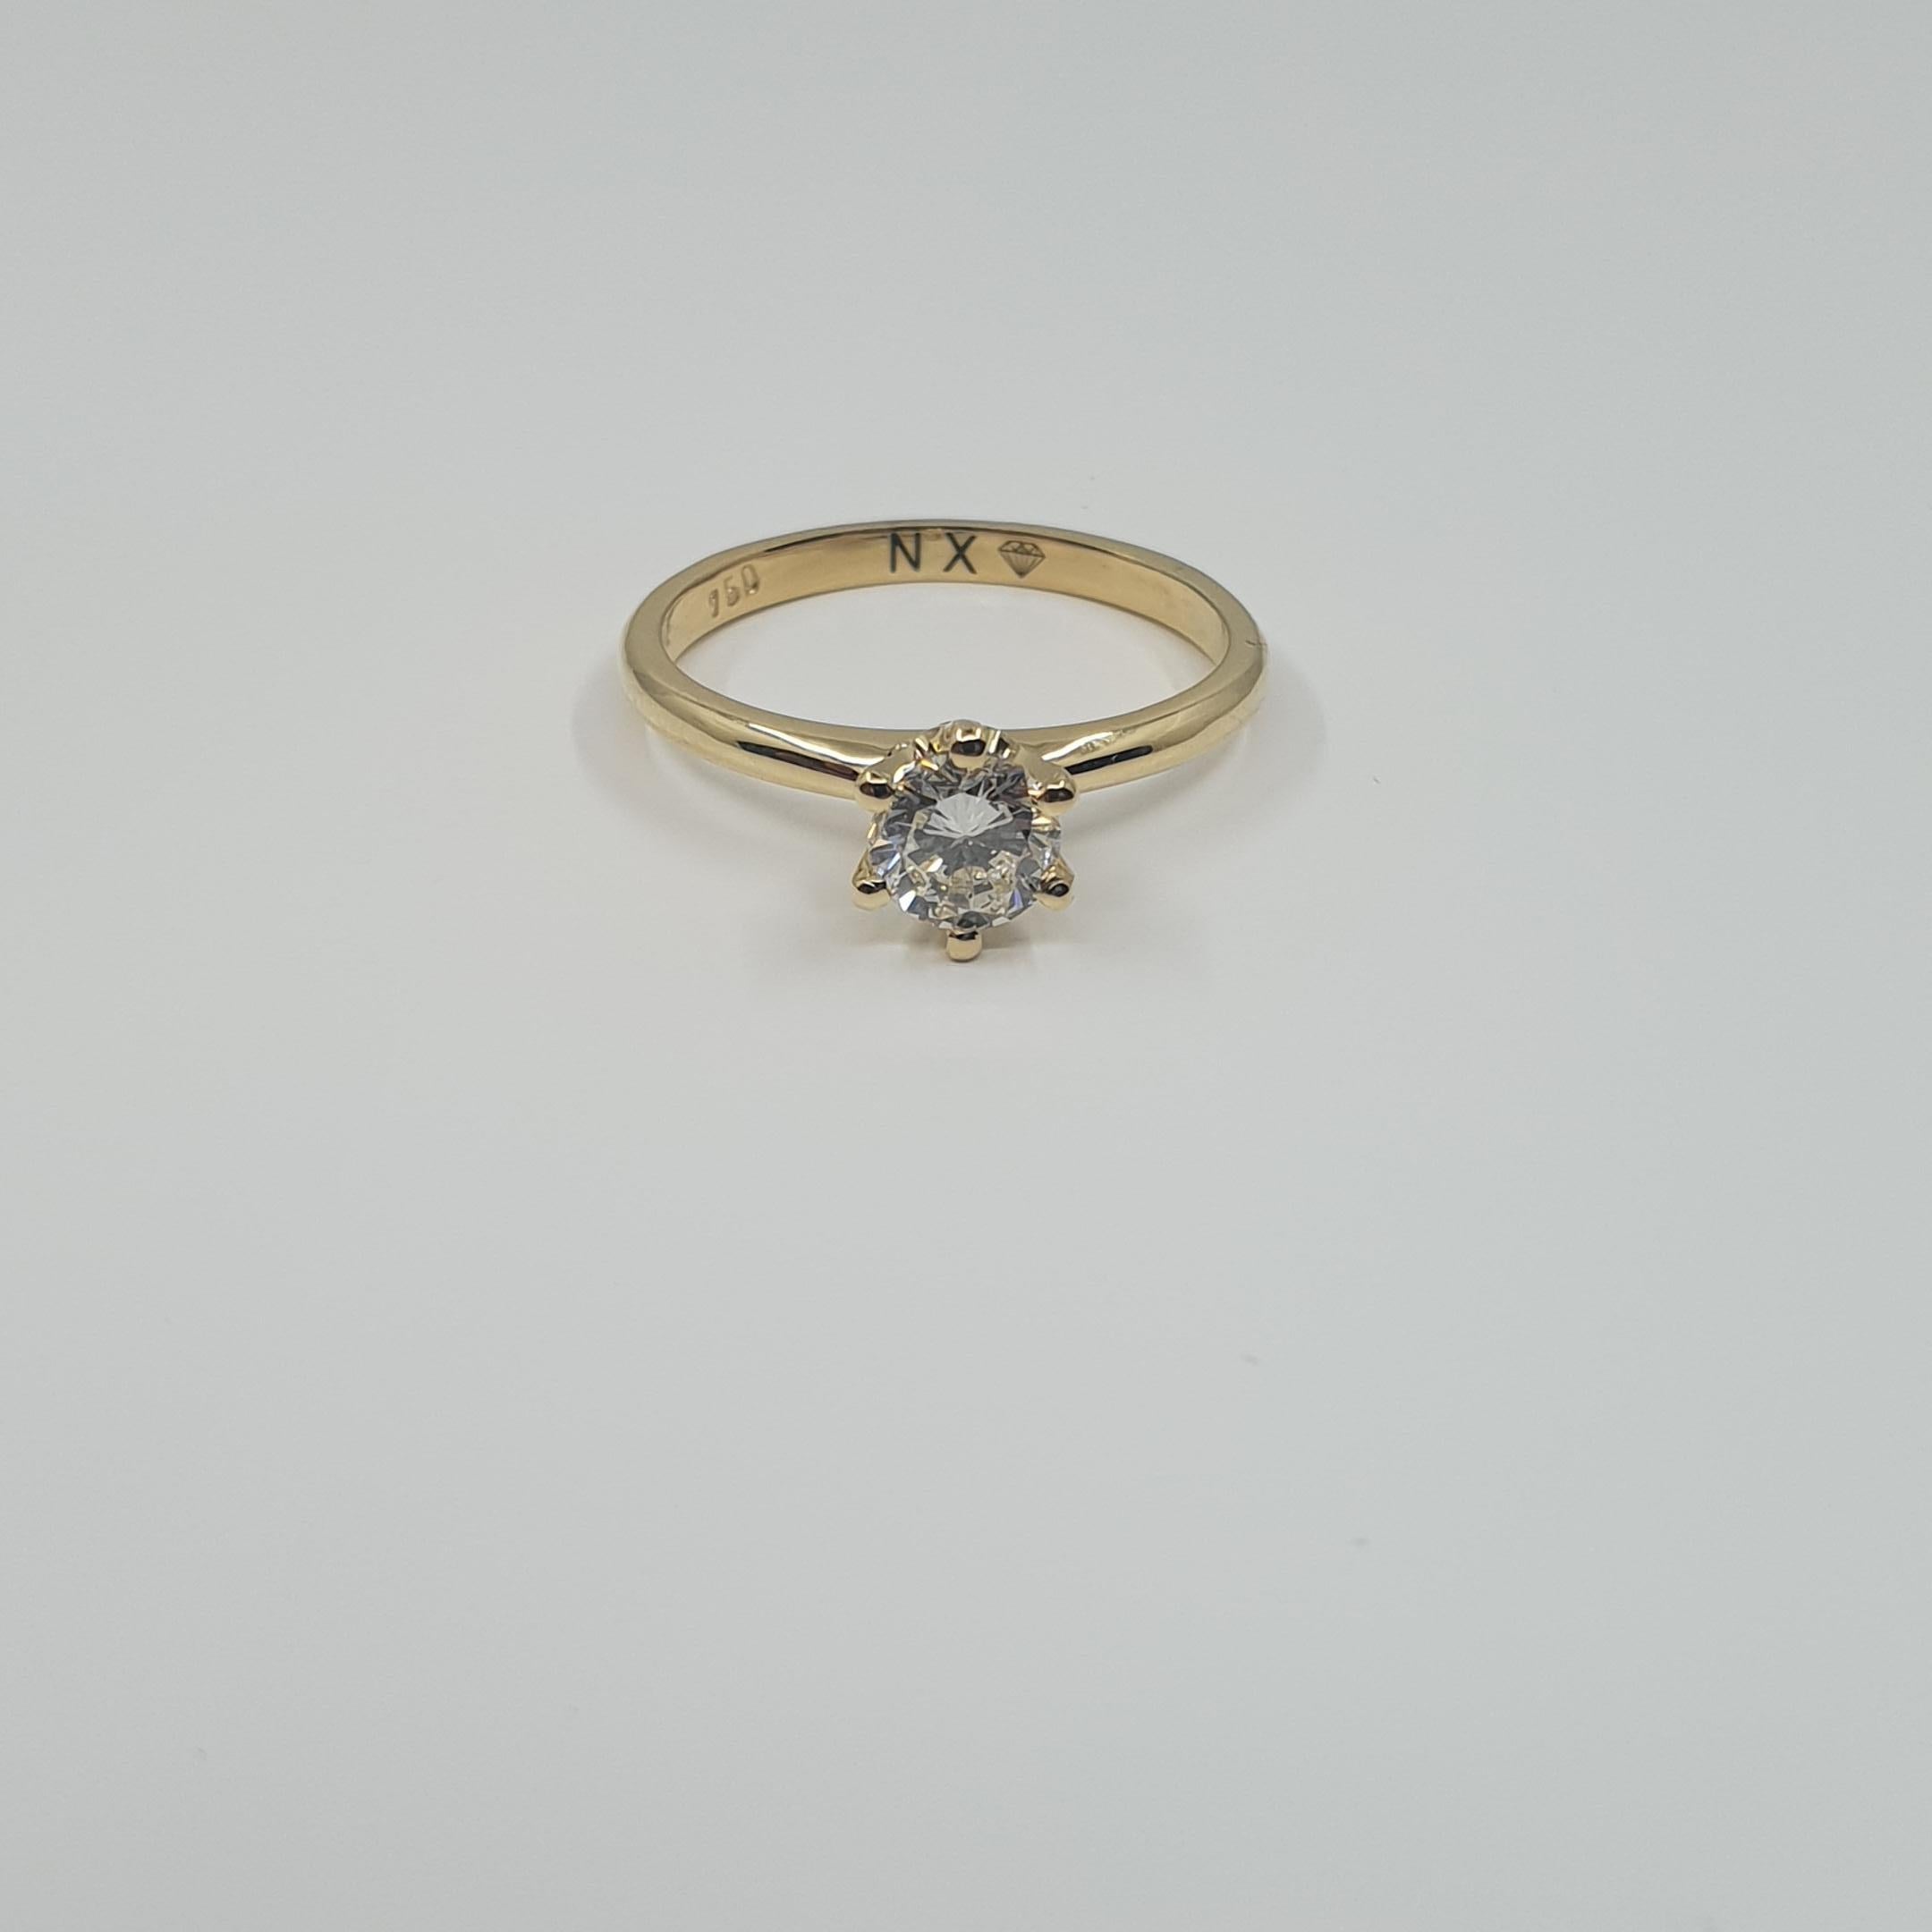 GIA-zertifizierter Diamant 0,50 H/SI1 Solitär-Ring 750 Gold in 6 Zackenfassung

Hochglänzender, feiner Solitärring aus 18k Gold. Jede Ringgröße möglich. 

5 C`s:
Zertifikat: GIA
Karat: 0,50ct
Farbe: H
Reinheit: SI1(Kleine Einschlüsse)
Schnitt: Sehr